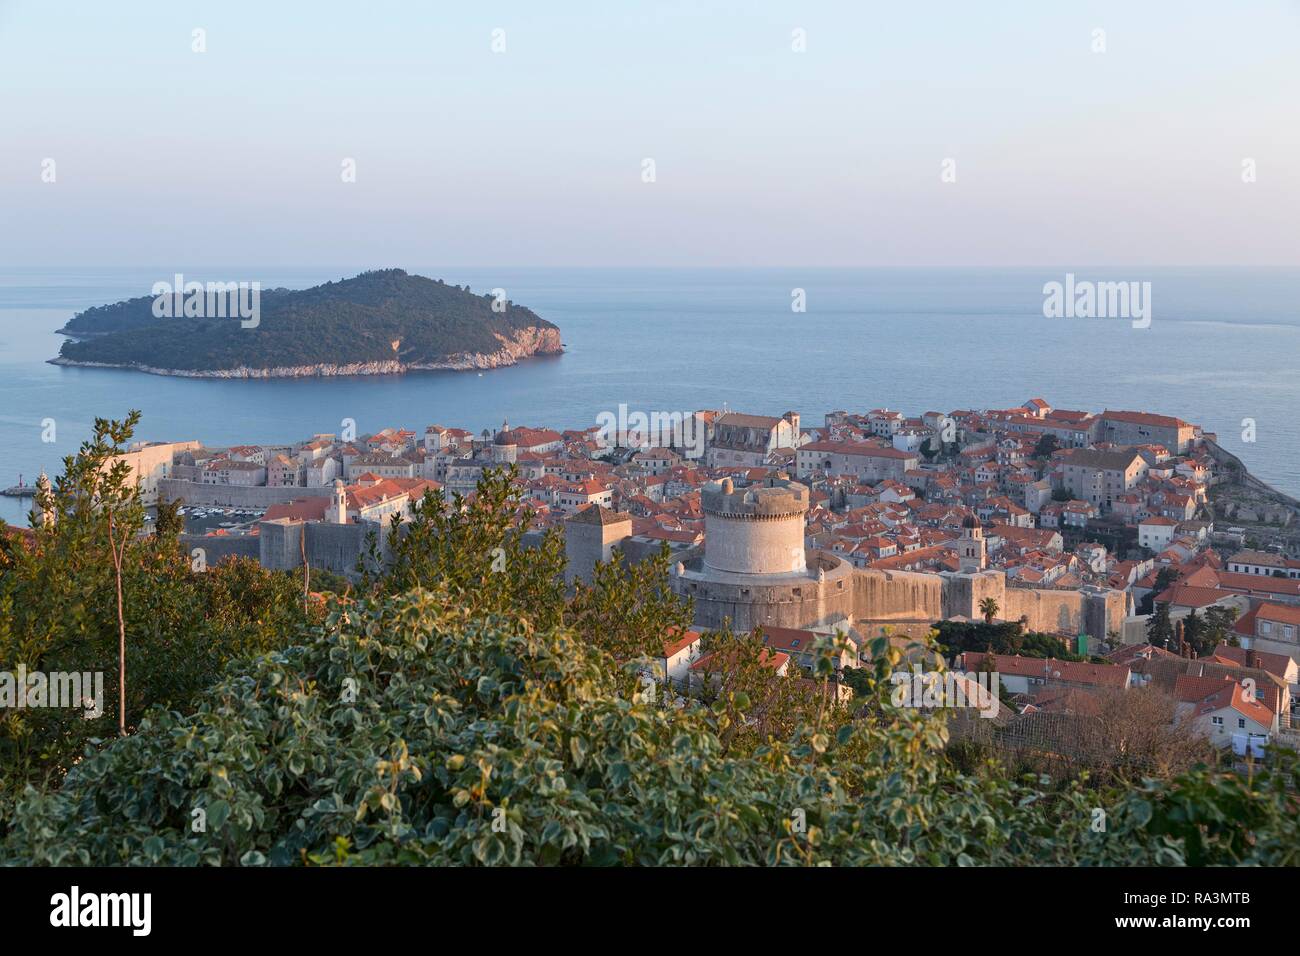 Vista panorámica de la ciudad antigua desde el Monte Srd, Dubrovnik, Croacia Foto de stock